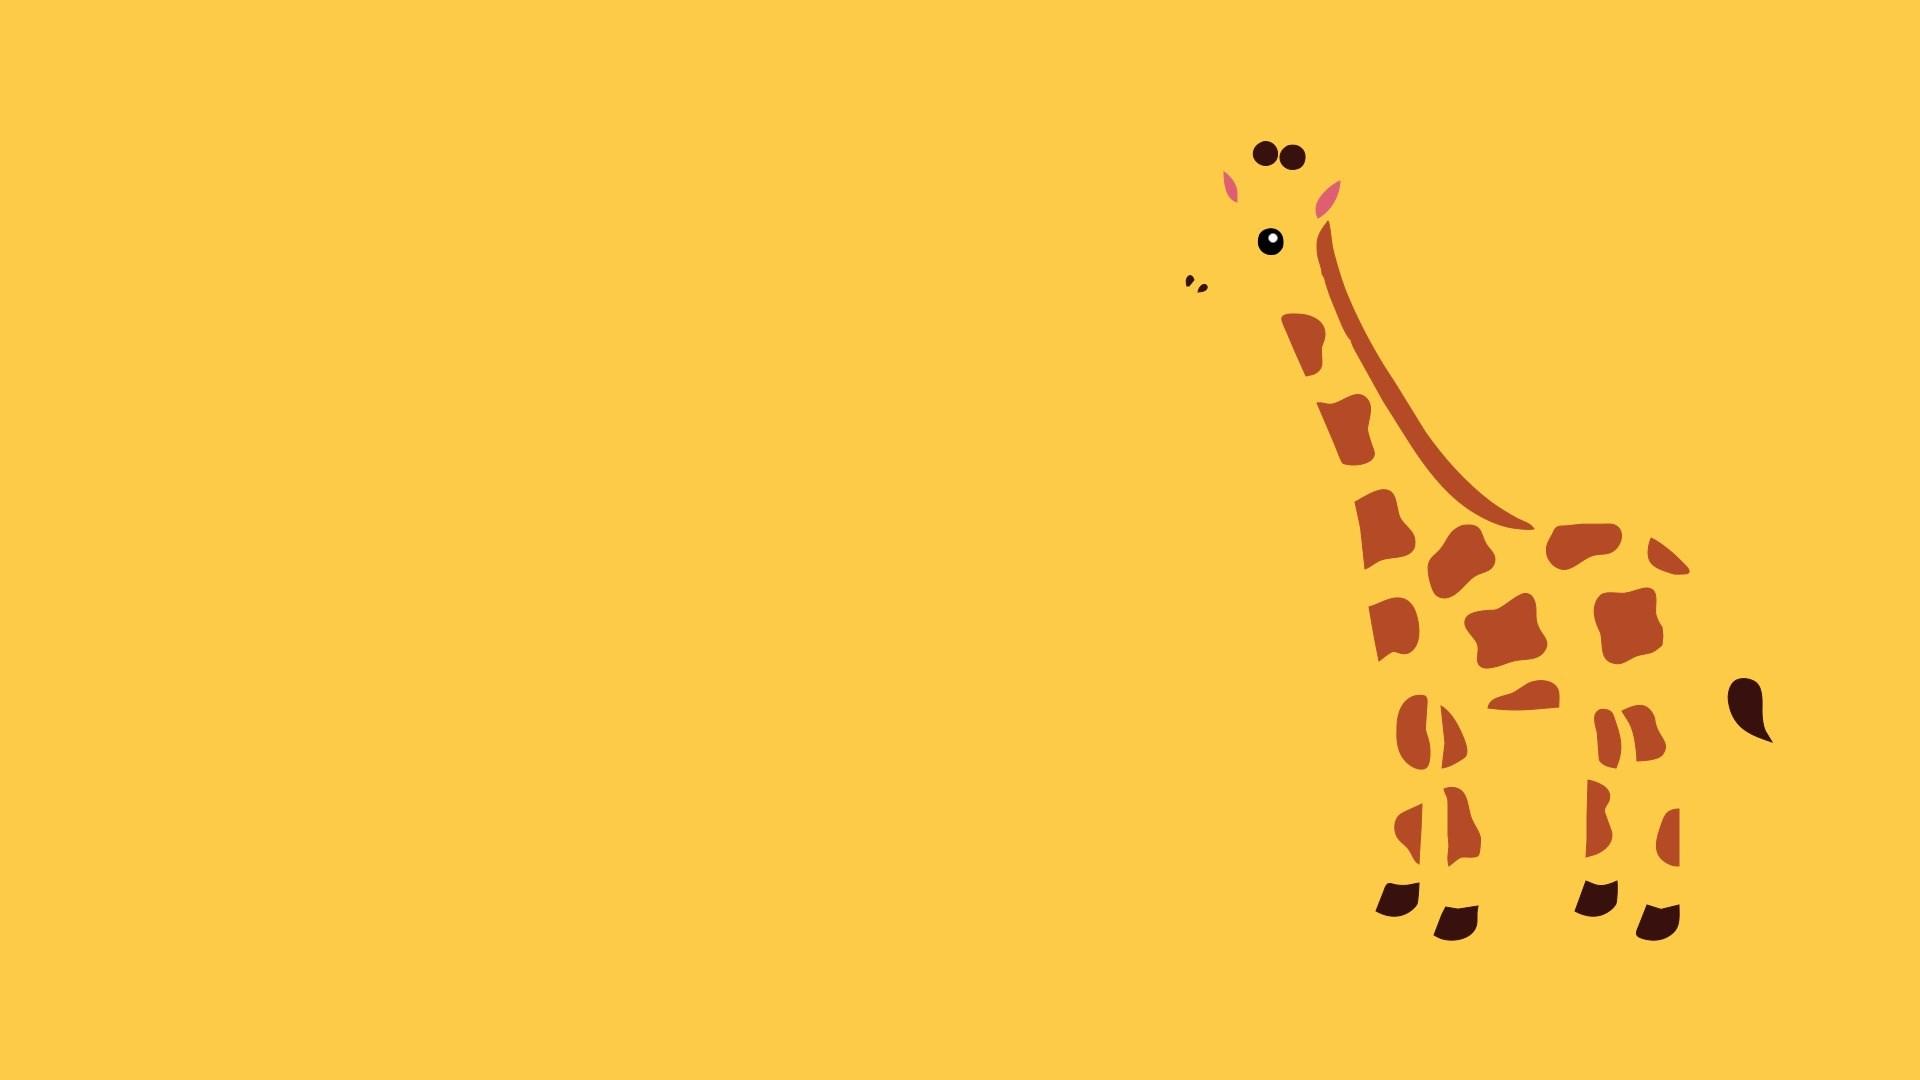 Giraffe HD Wallpaper